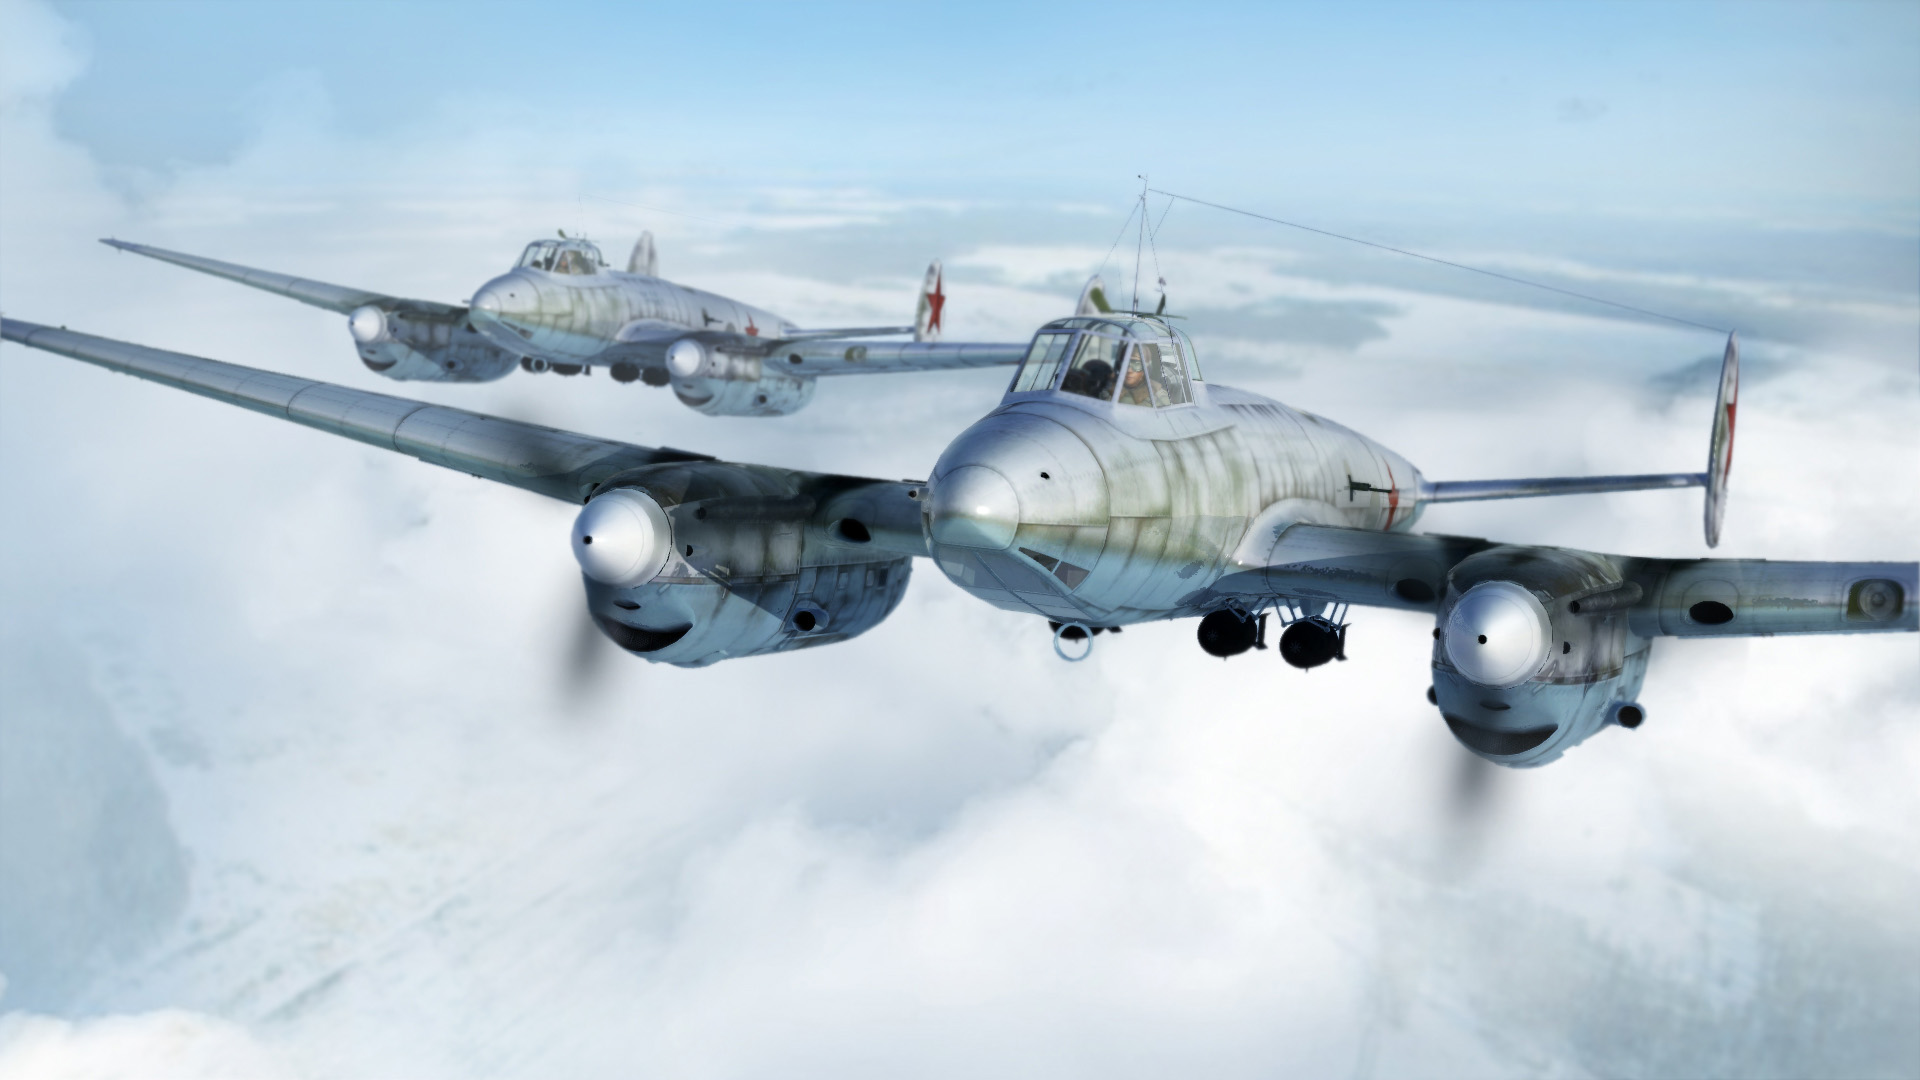 il 2 sturmovik battle of stalingrad il-2